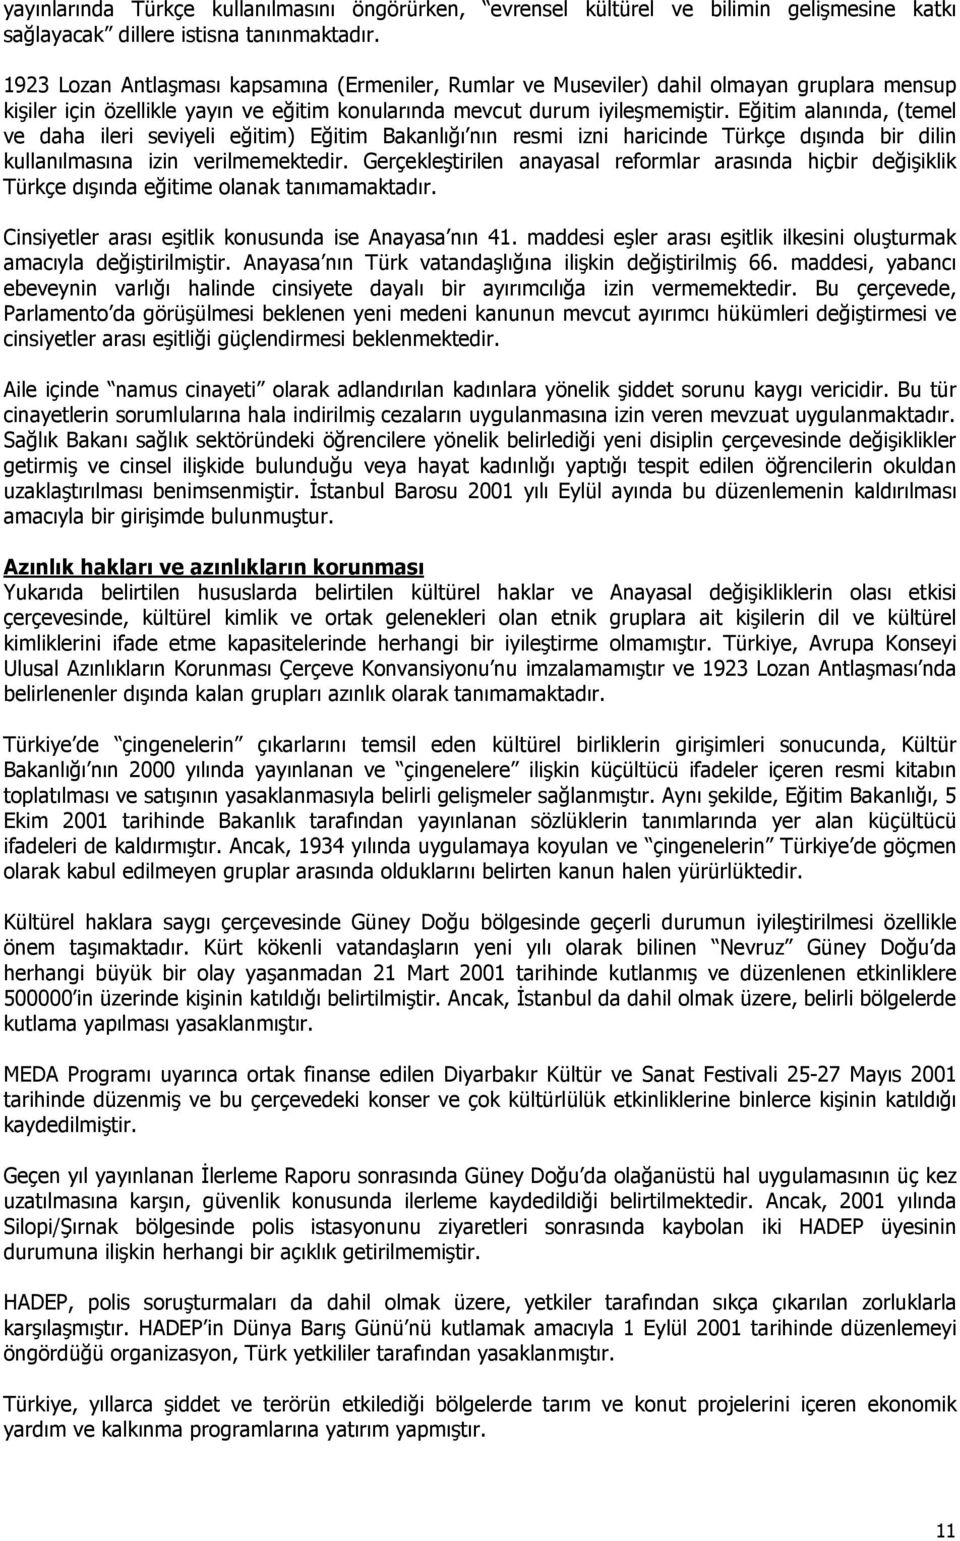 Eğitim alanında, (temel ve daha ileri seviyeli eğitim) Eğitim Bakanlığı nın resmi izni haricinde Türkçe dışında bir dilin kullanılmasına izin verilmemektedir.